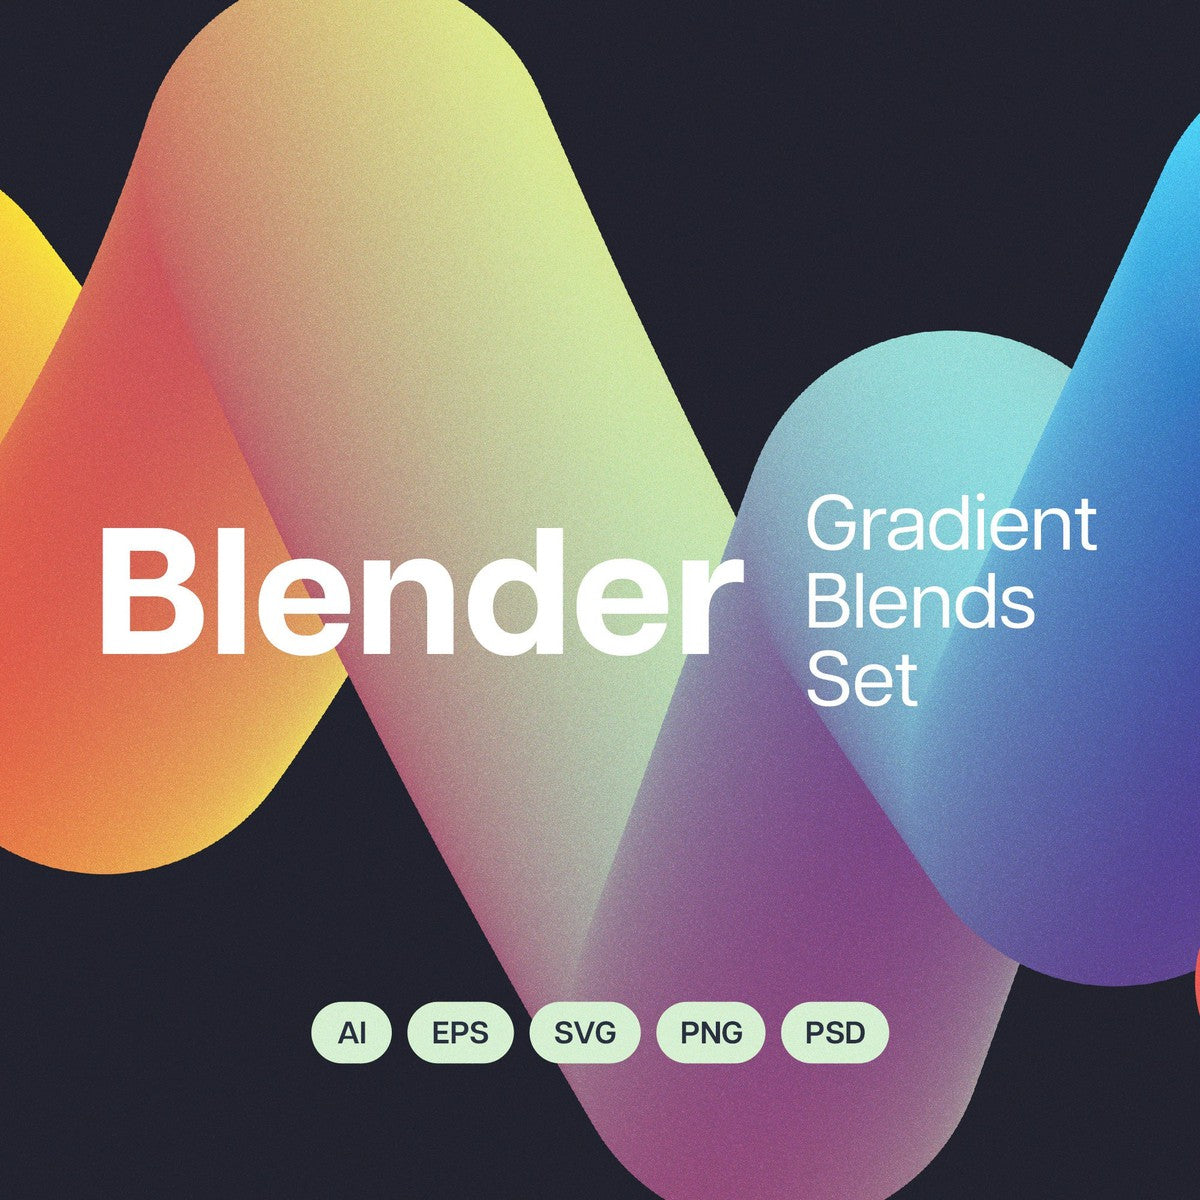 Blender: Gradient Blends Collection